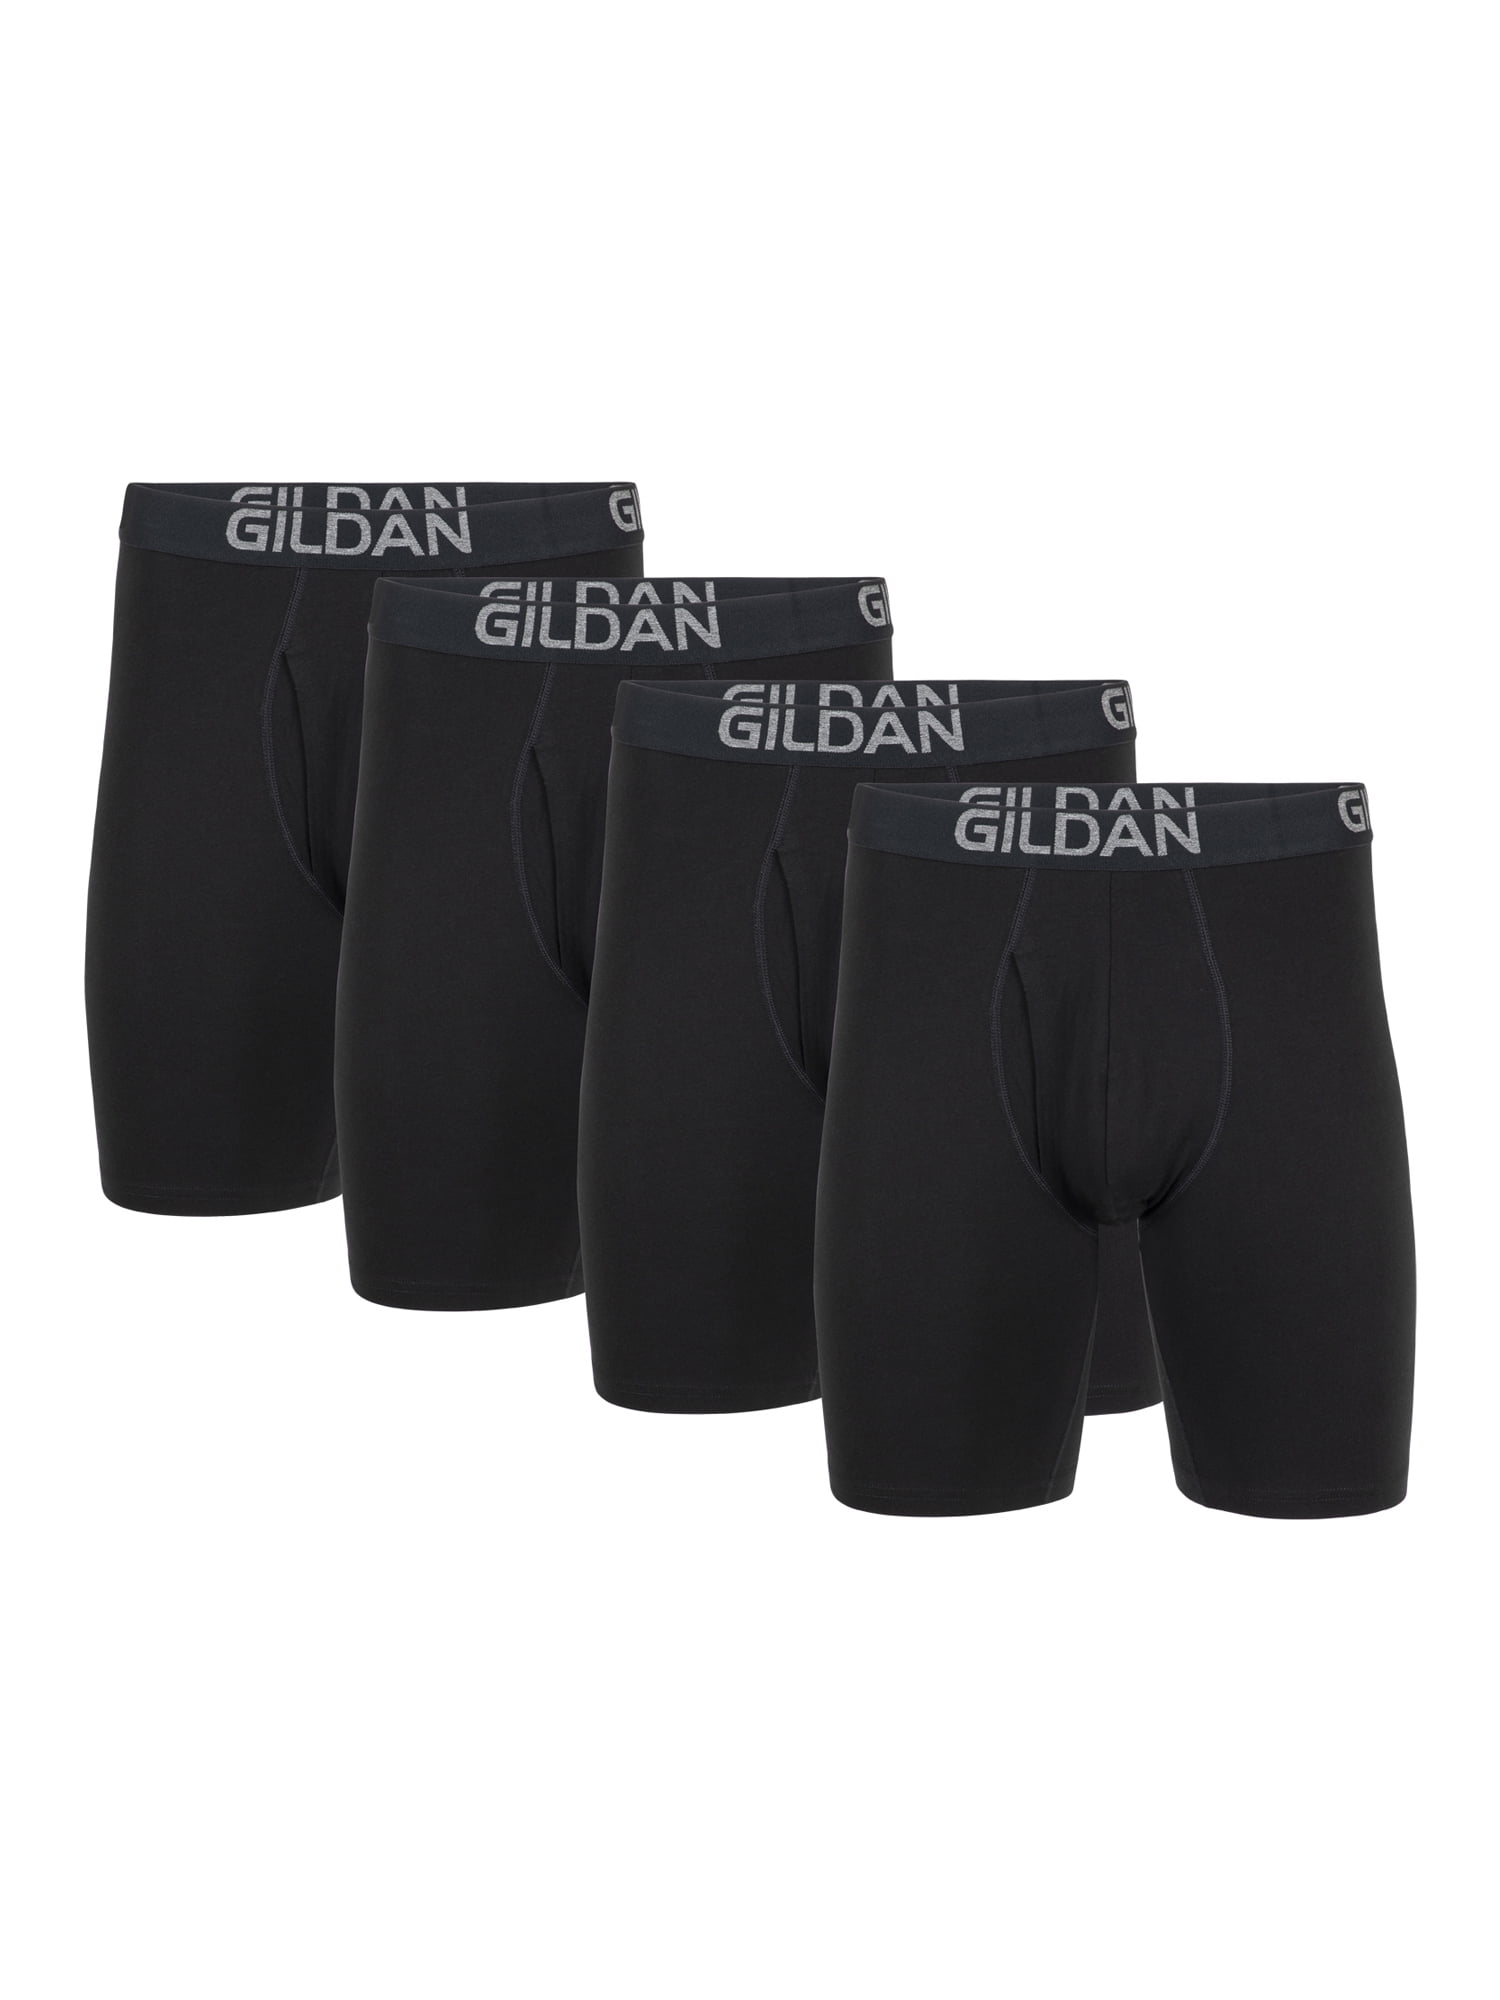 Gildan Men's Cotton Stretch Long Leg Boxer Brief